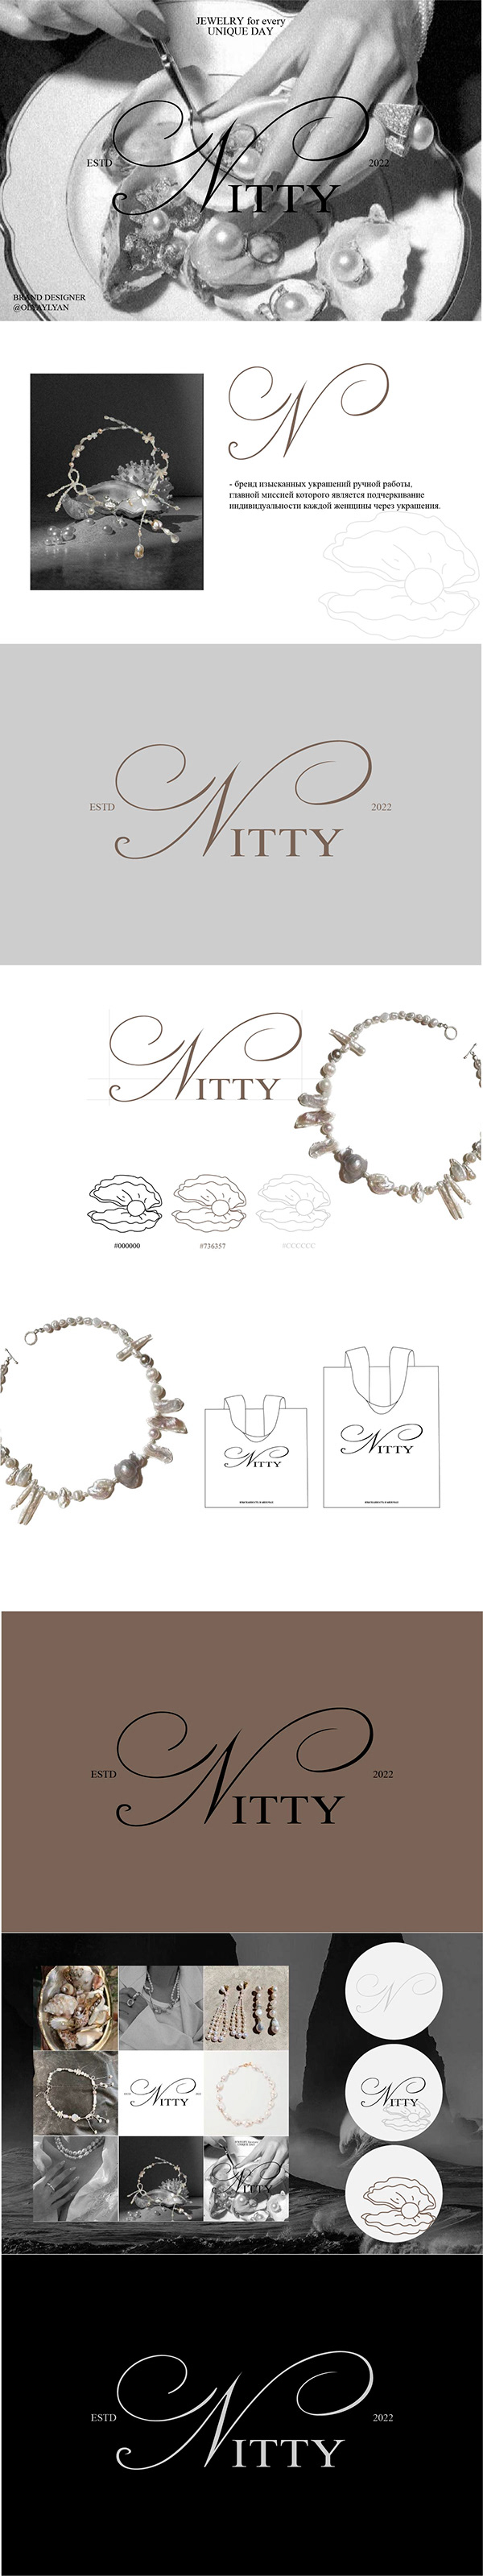 Nitty | Логотип для бренда украшений